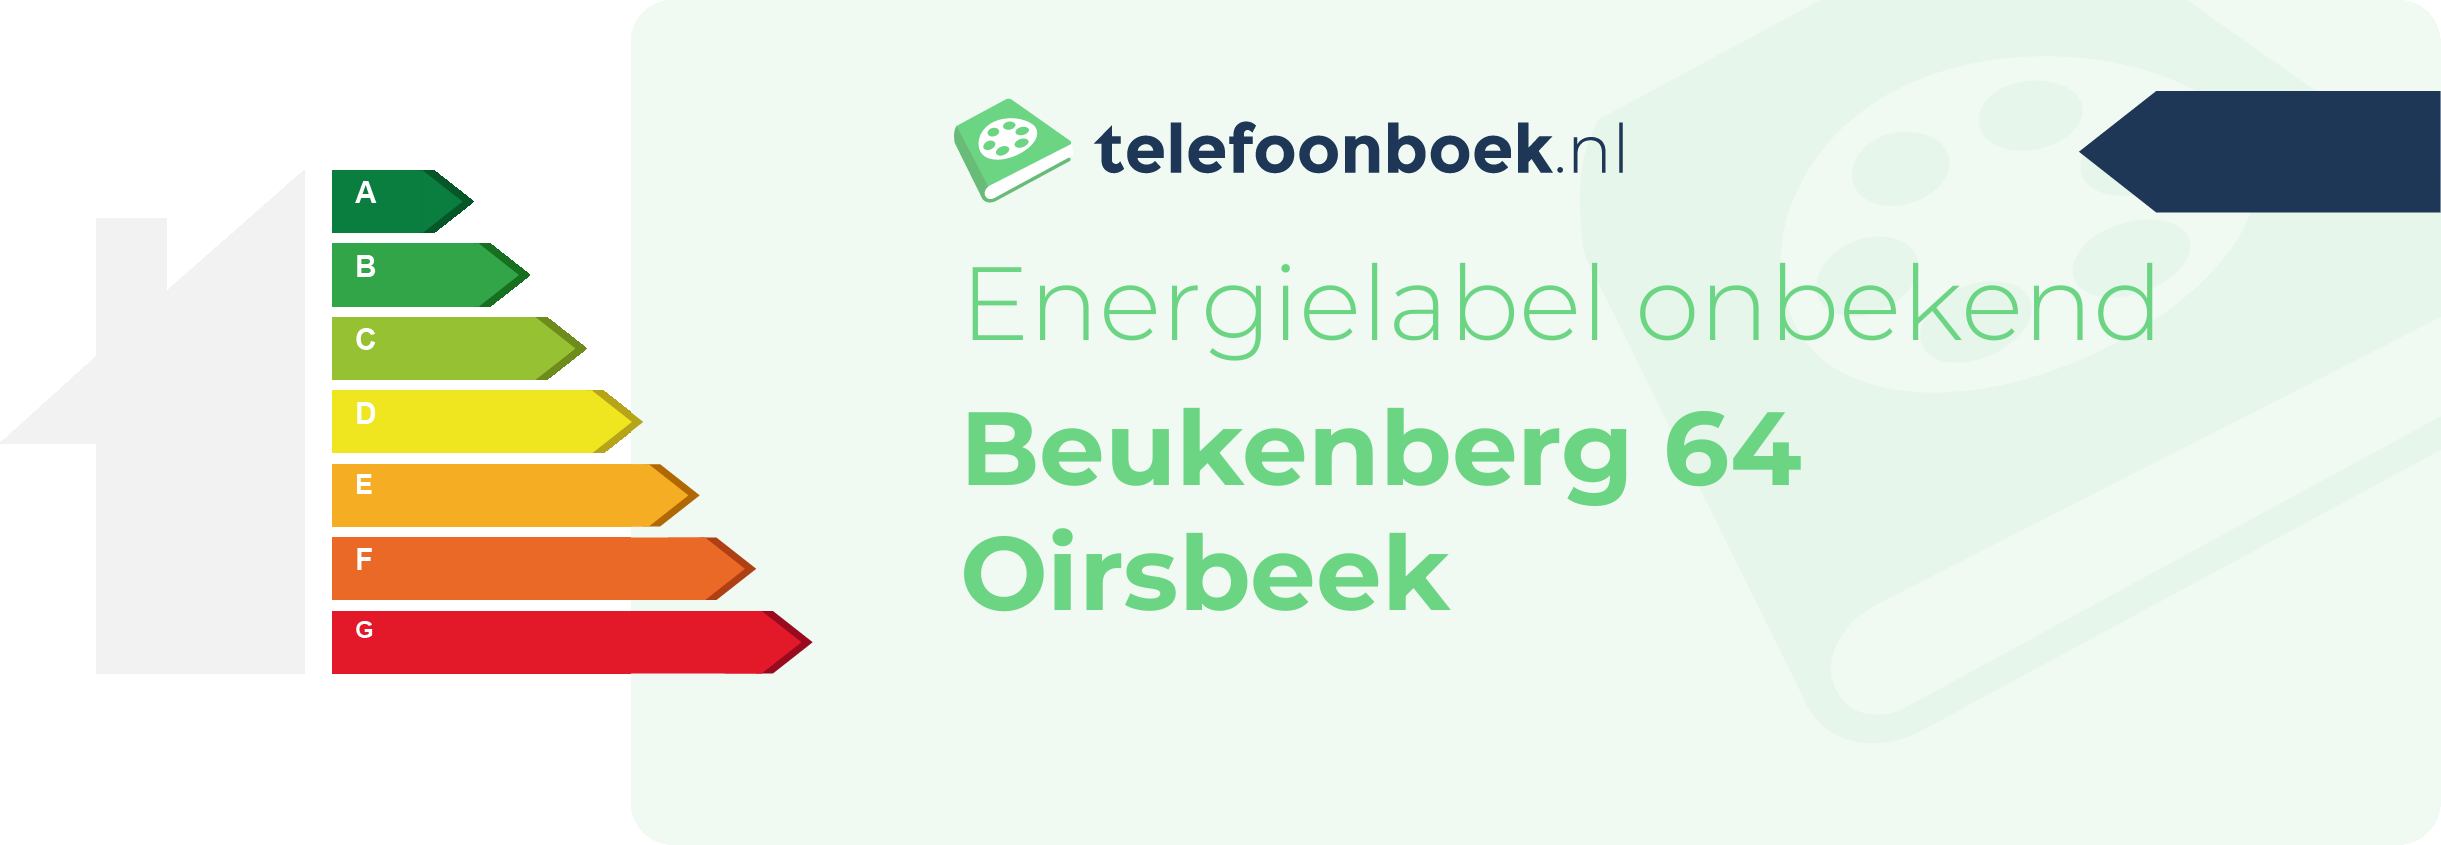 Energielabel Beukenberg 64 Oirsbeek